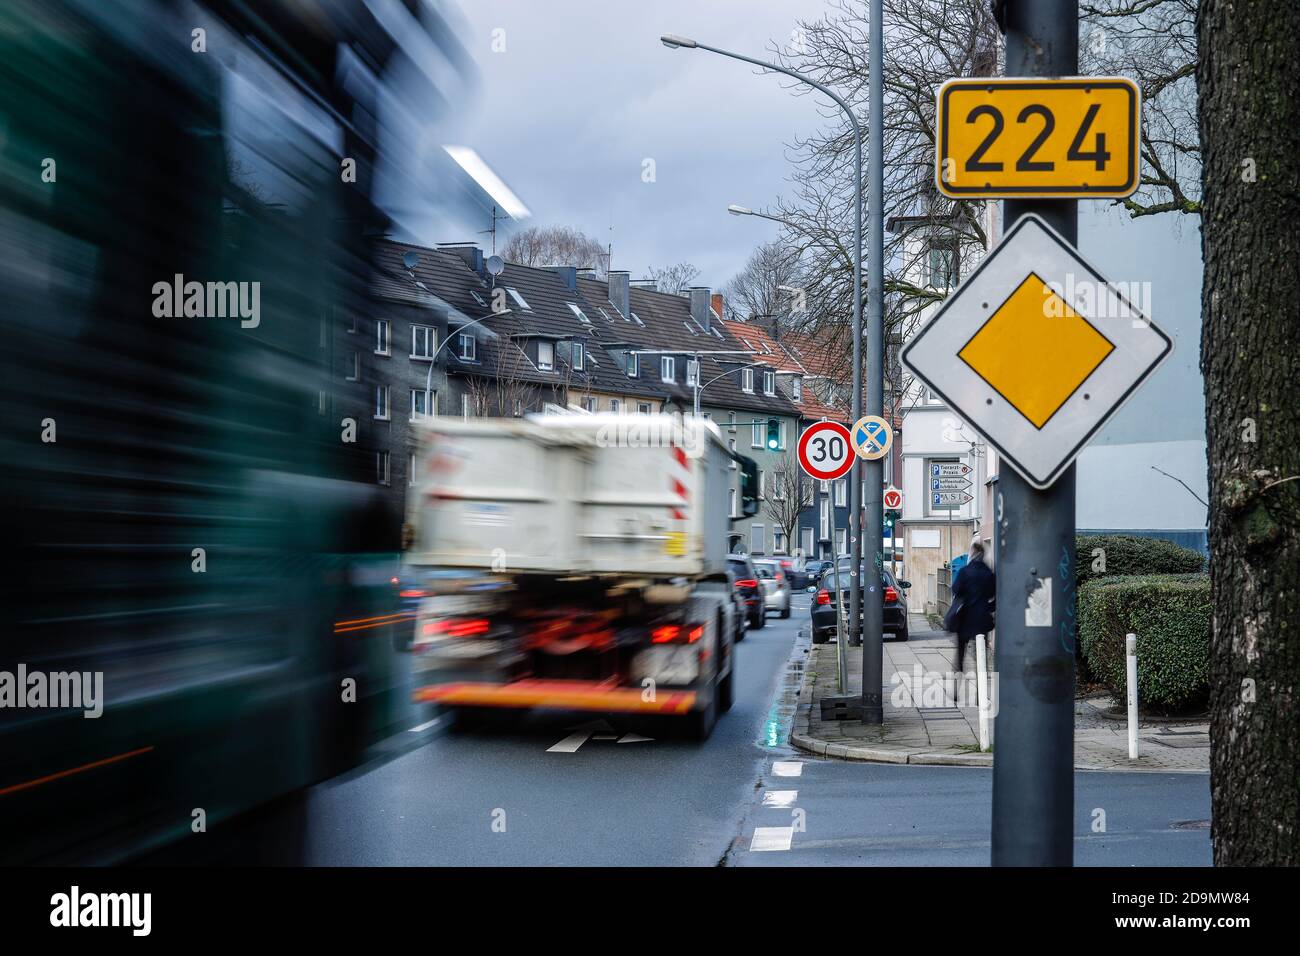 Traffico delle ore di punta nella zona ambientale sulla Bundesstrasse B 224 Alfredstrasse a Essen Rüttenscheid, su base sperimentale, il tempo 30 si applica su una sezione di Essen, nella zona della Ruhr, nella Renania settentrionale-Vestfalia, in Germania Foto Stock